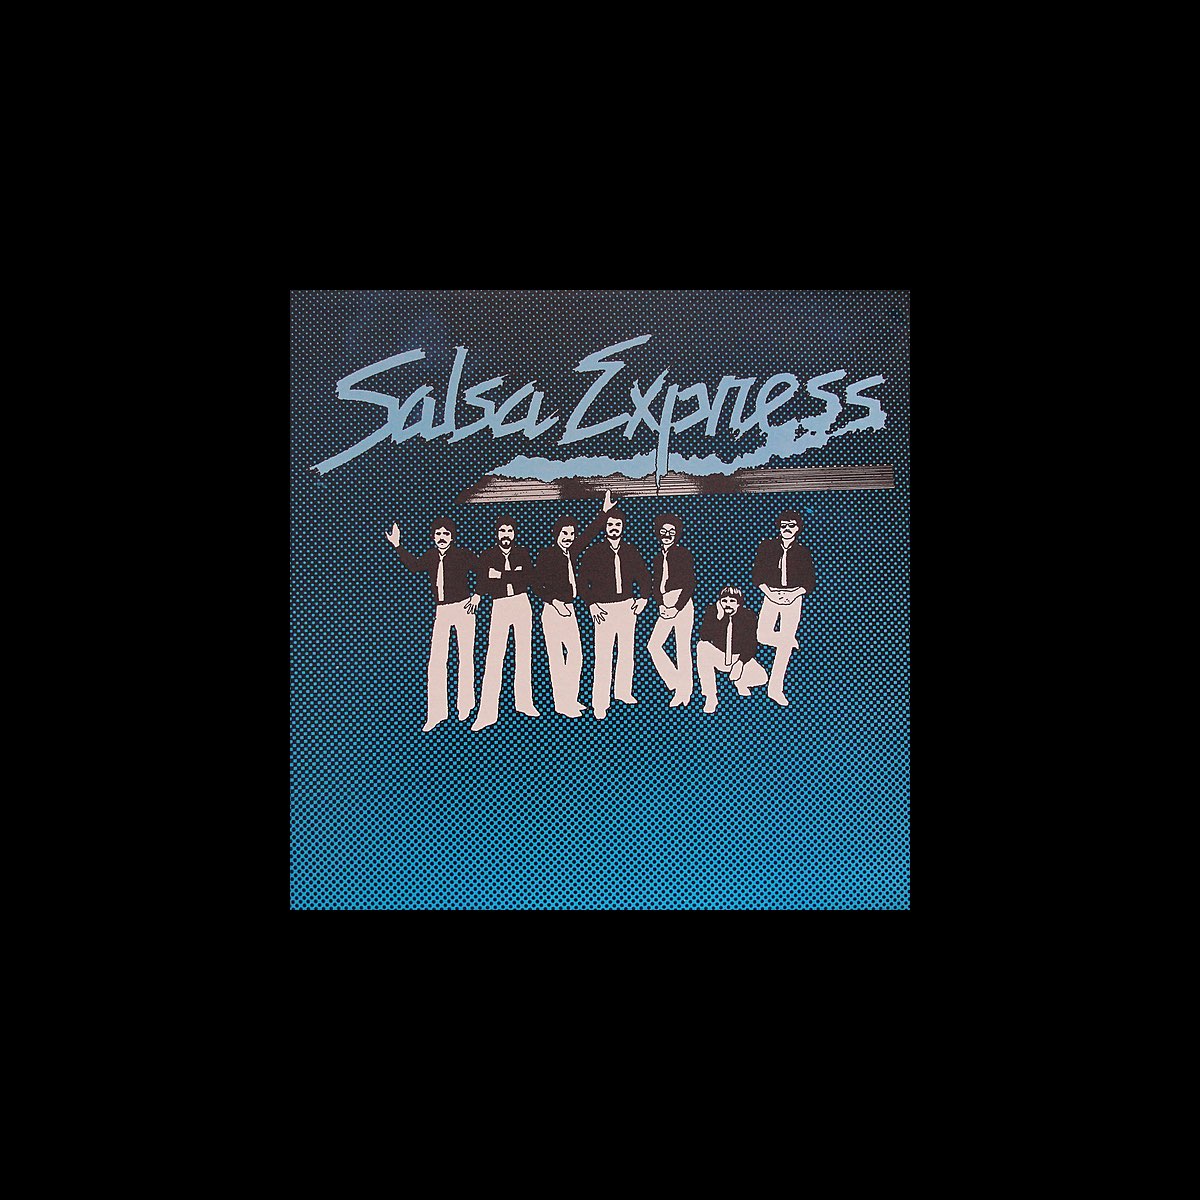 Salsa Express by Salsa Express on Apple Music